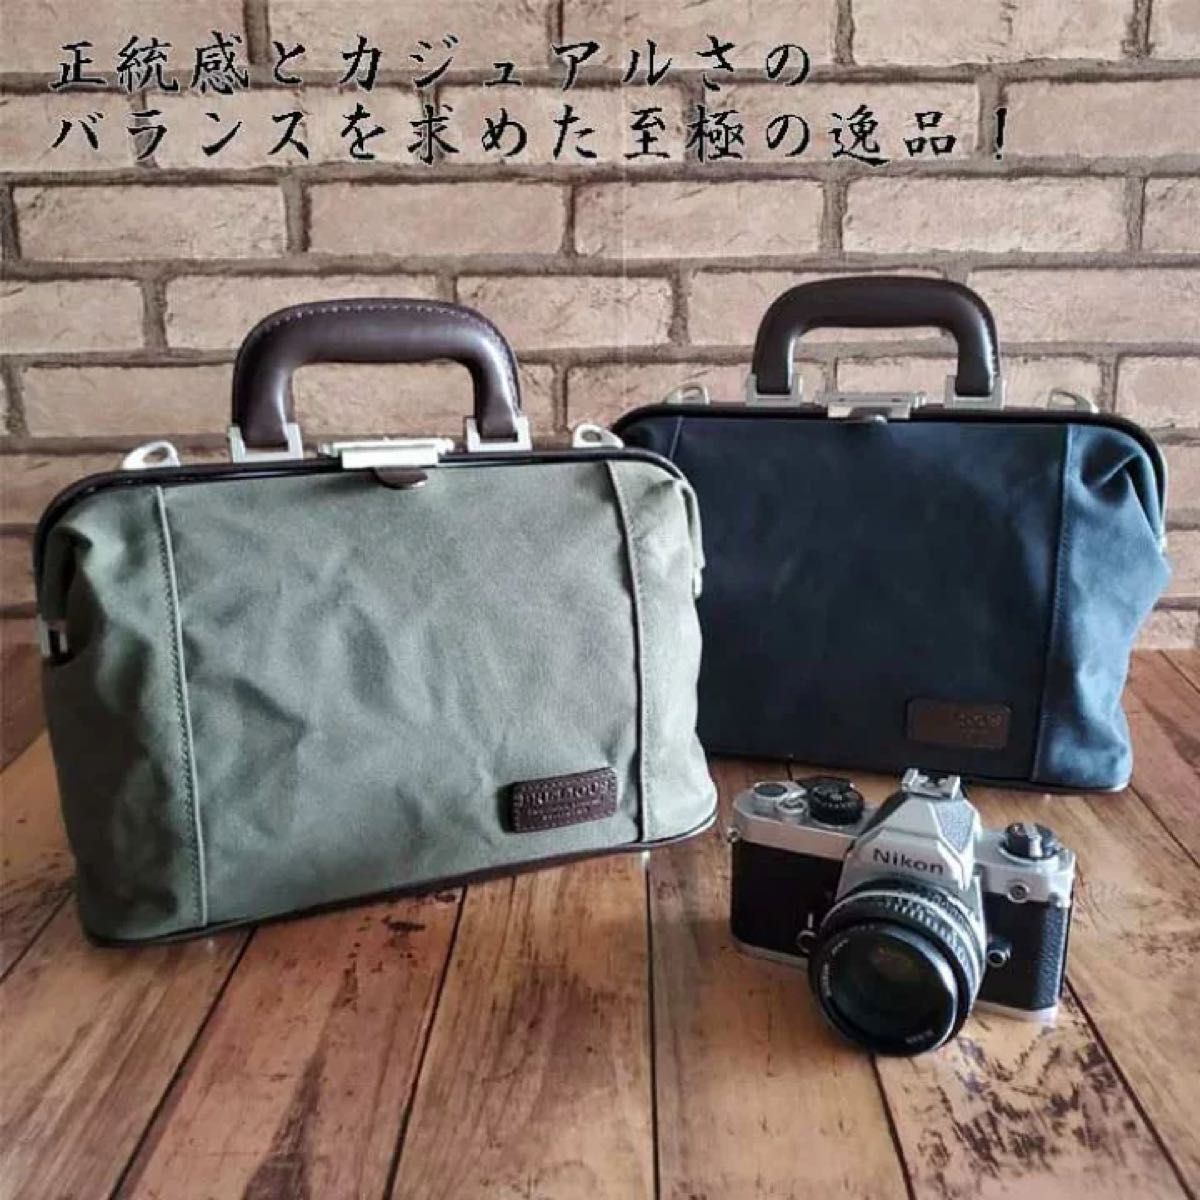 ダレスバッグ ボストンバッグ 日本製 豊岡製鞄 B5 ブランド 撥水 ショルダーベルト アーミーダック ヴィンテージ 10451